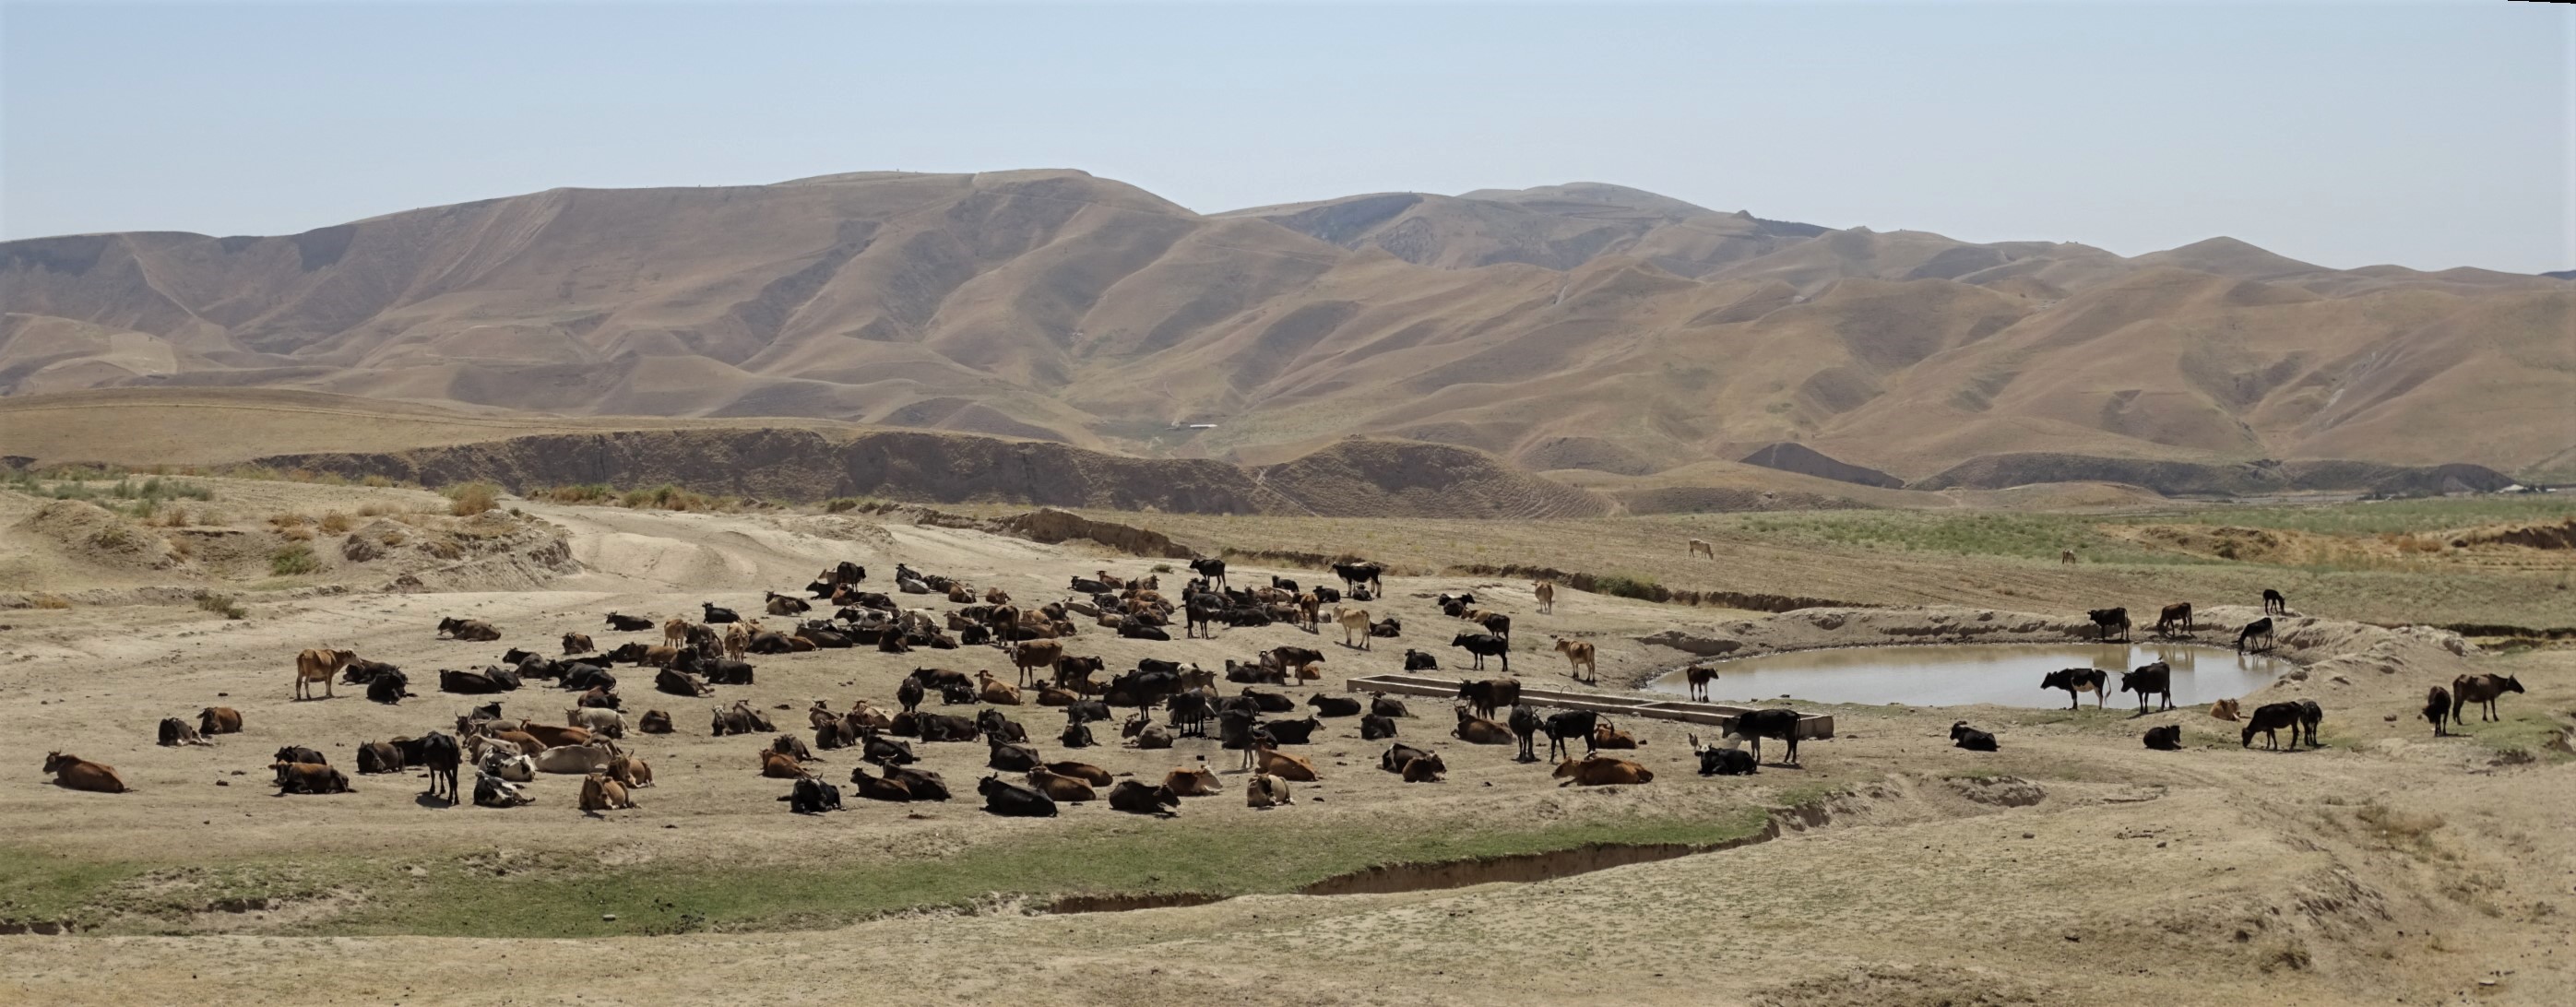 Cattle Herd, Tajikistan